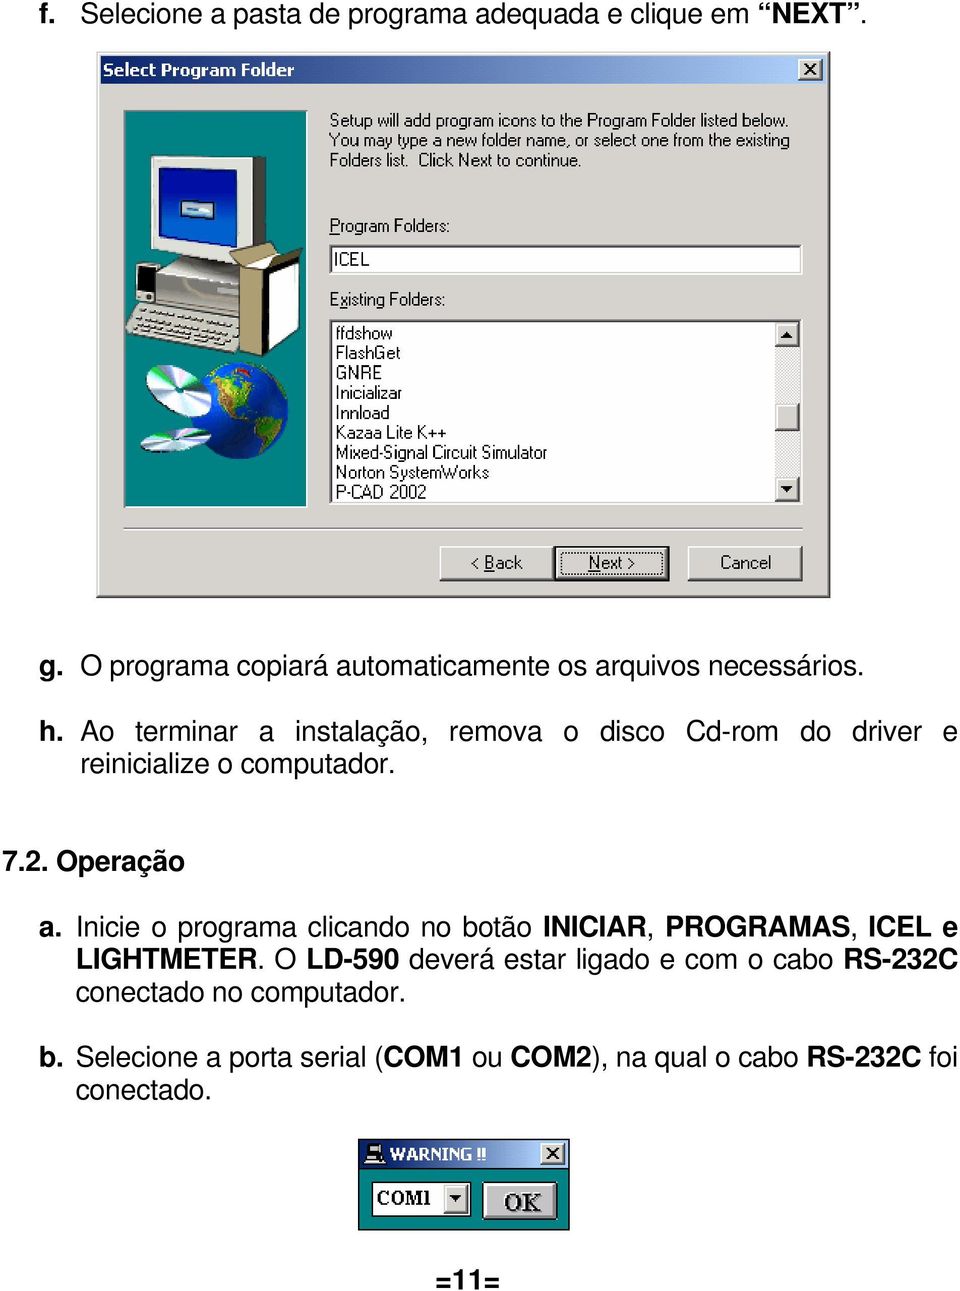 Ao terminar a instalação, remova o disco Cd-rom do driver e reinicialize o computador. 7.2. Operação a.